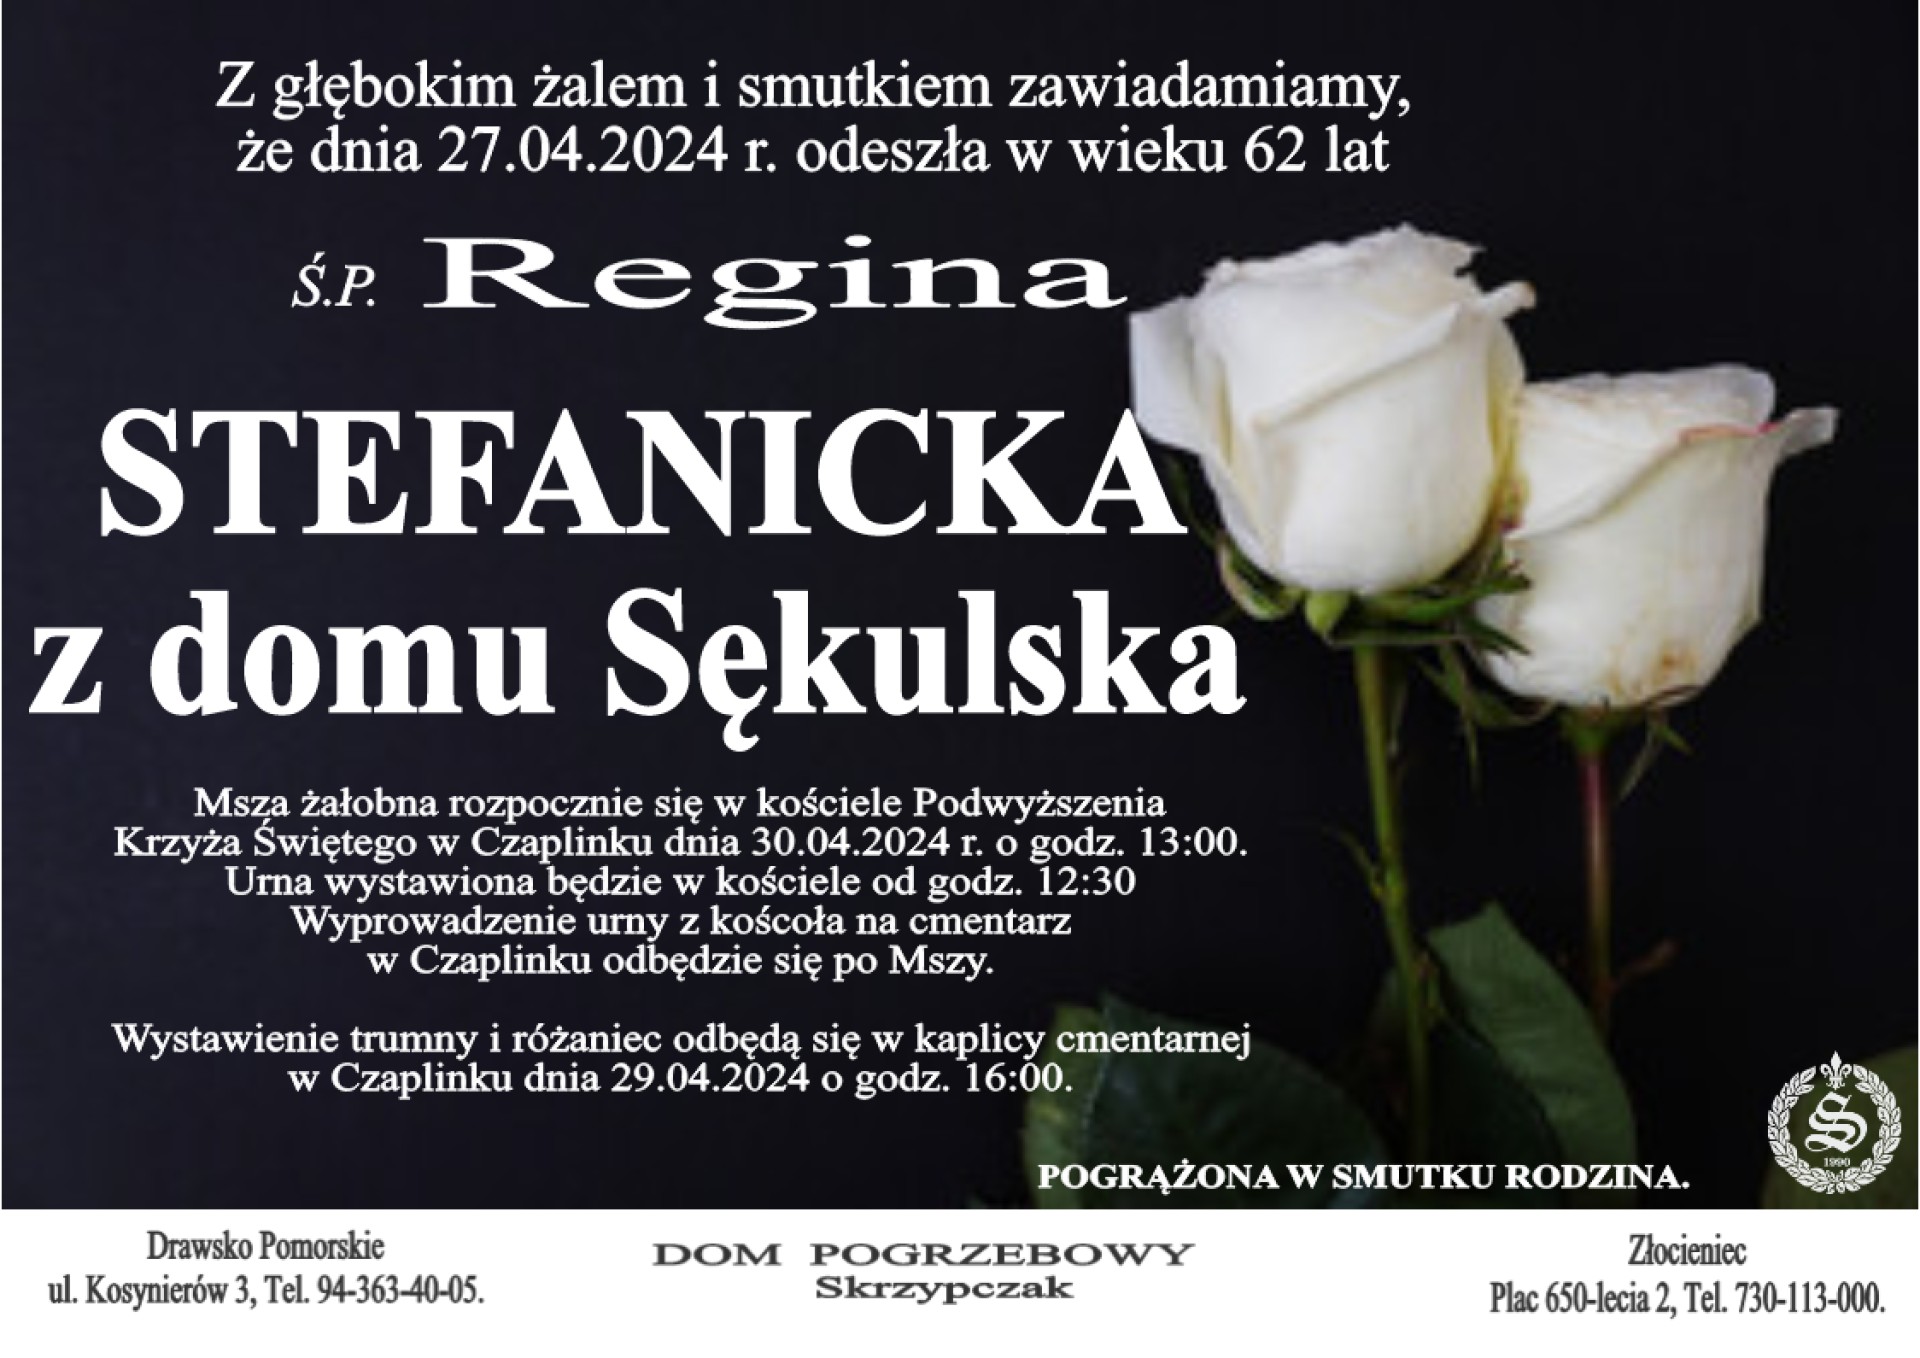 Ś. P. Regina Stefanicka